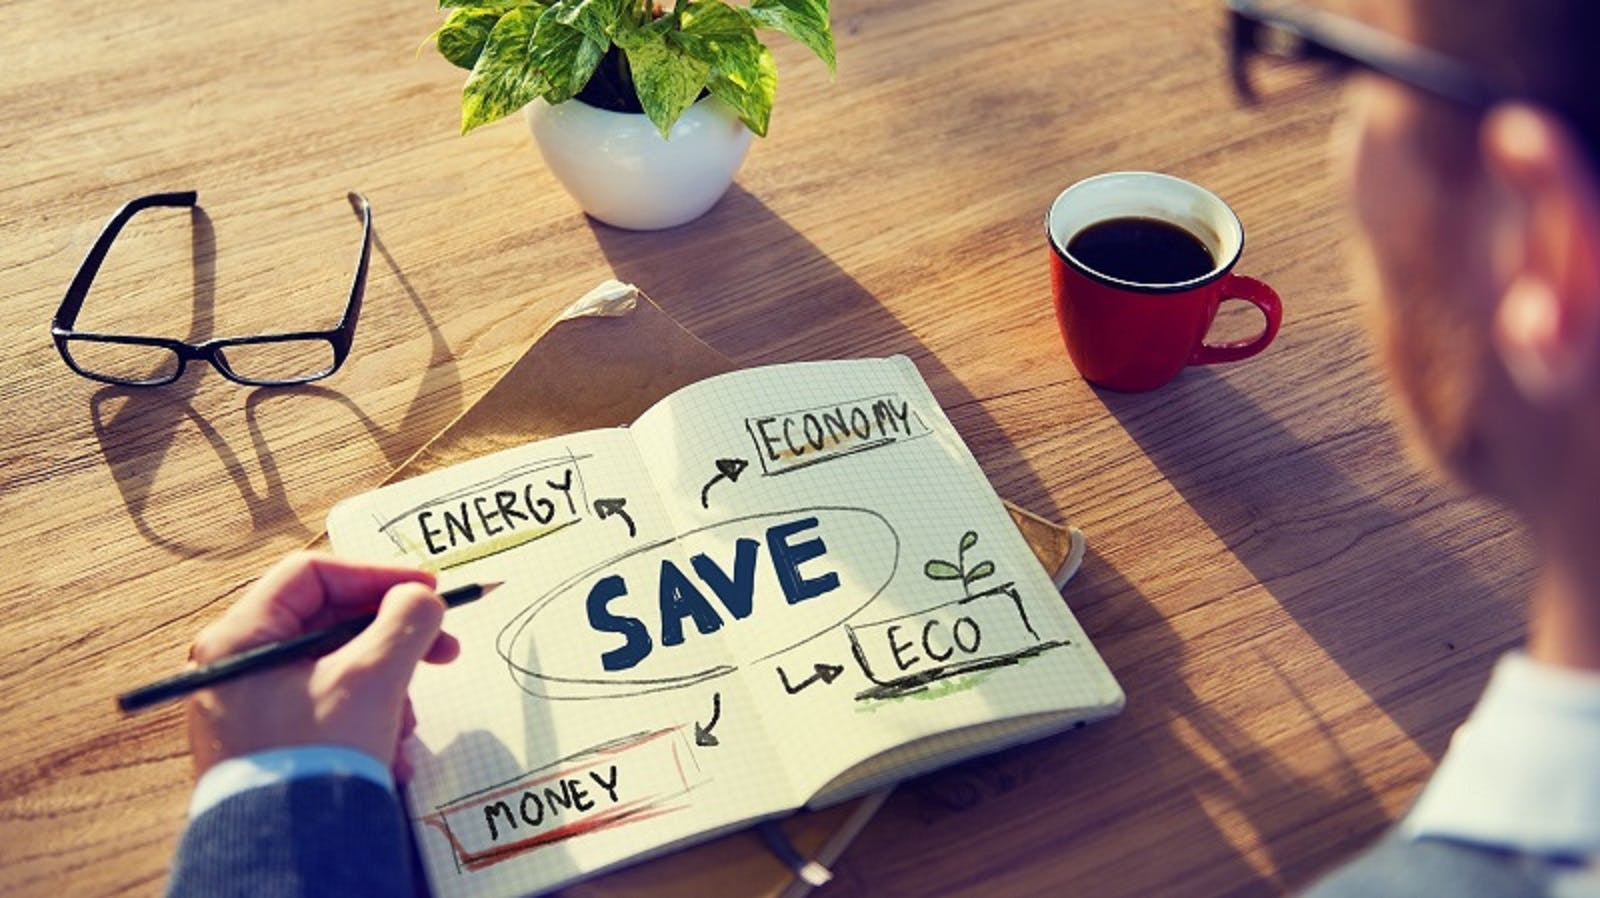 img 1: “Un dipendente pubblico segna in agenda delle parole chiave riguardanti il risparmio energetico”